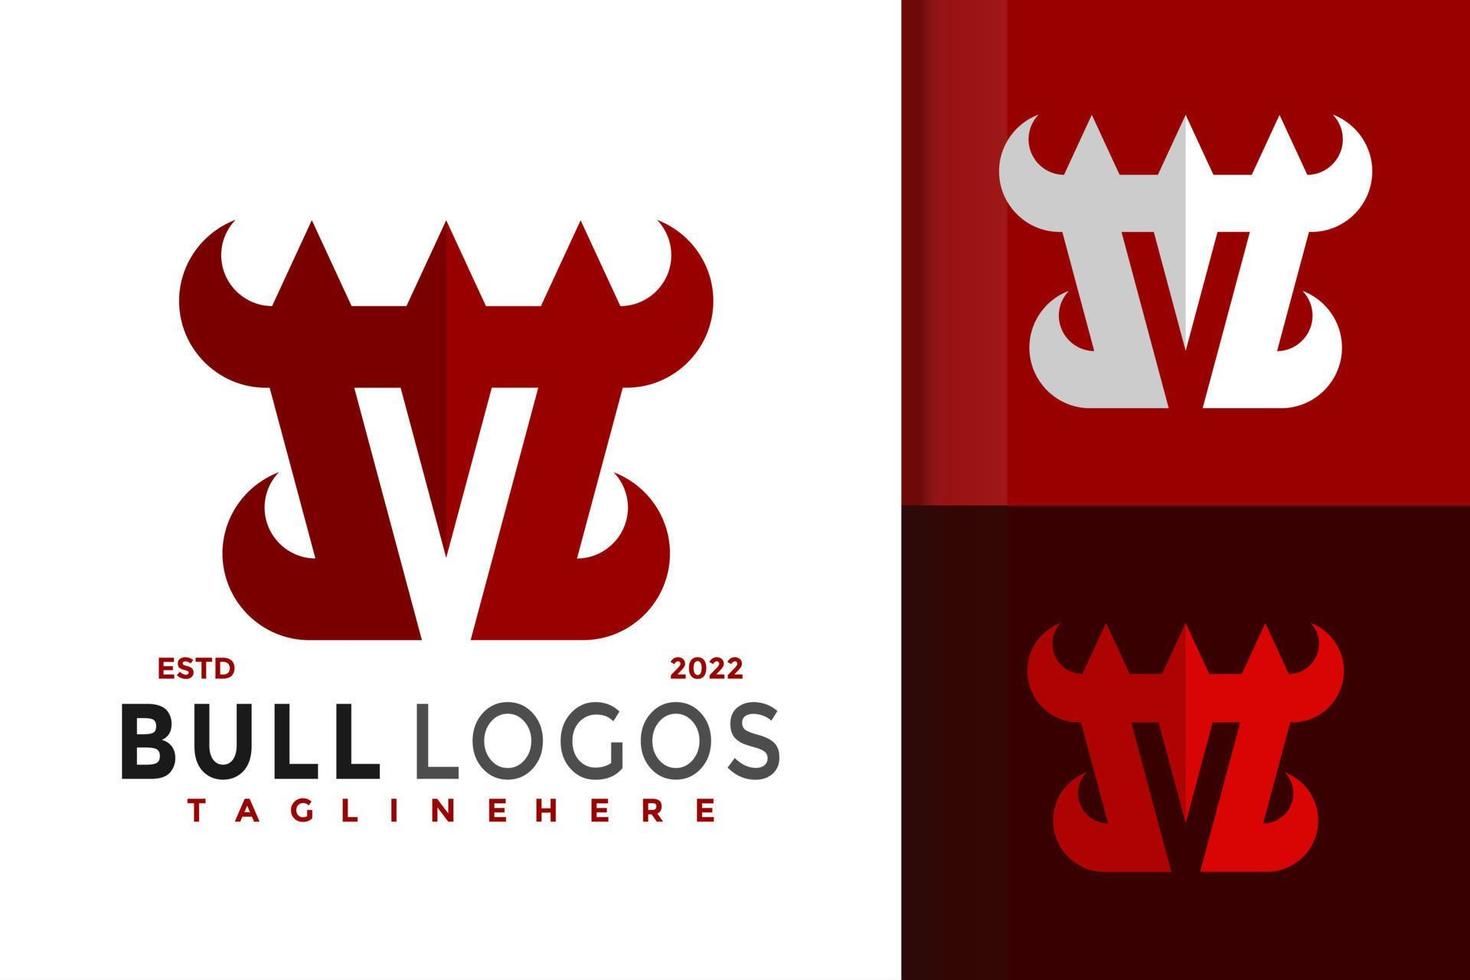 création de logo de corne de taureau lettre m, vecteur de logos d'identité de marque, logo moderne, modèle d'illustration vectorielle de dessins de logo